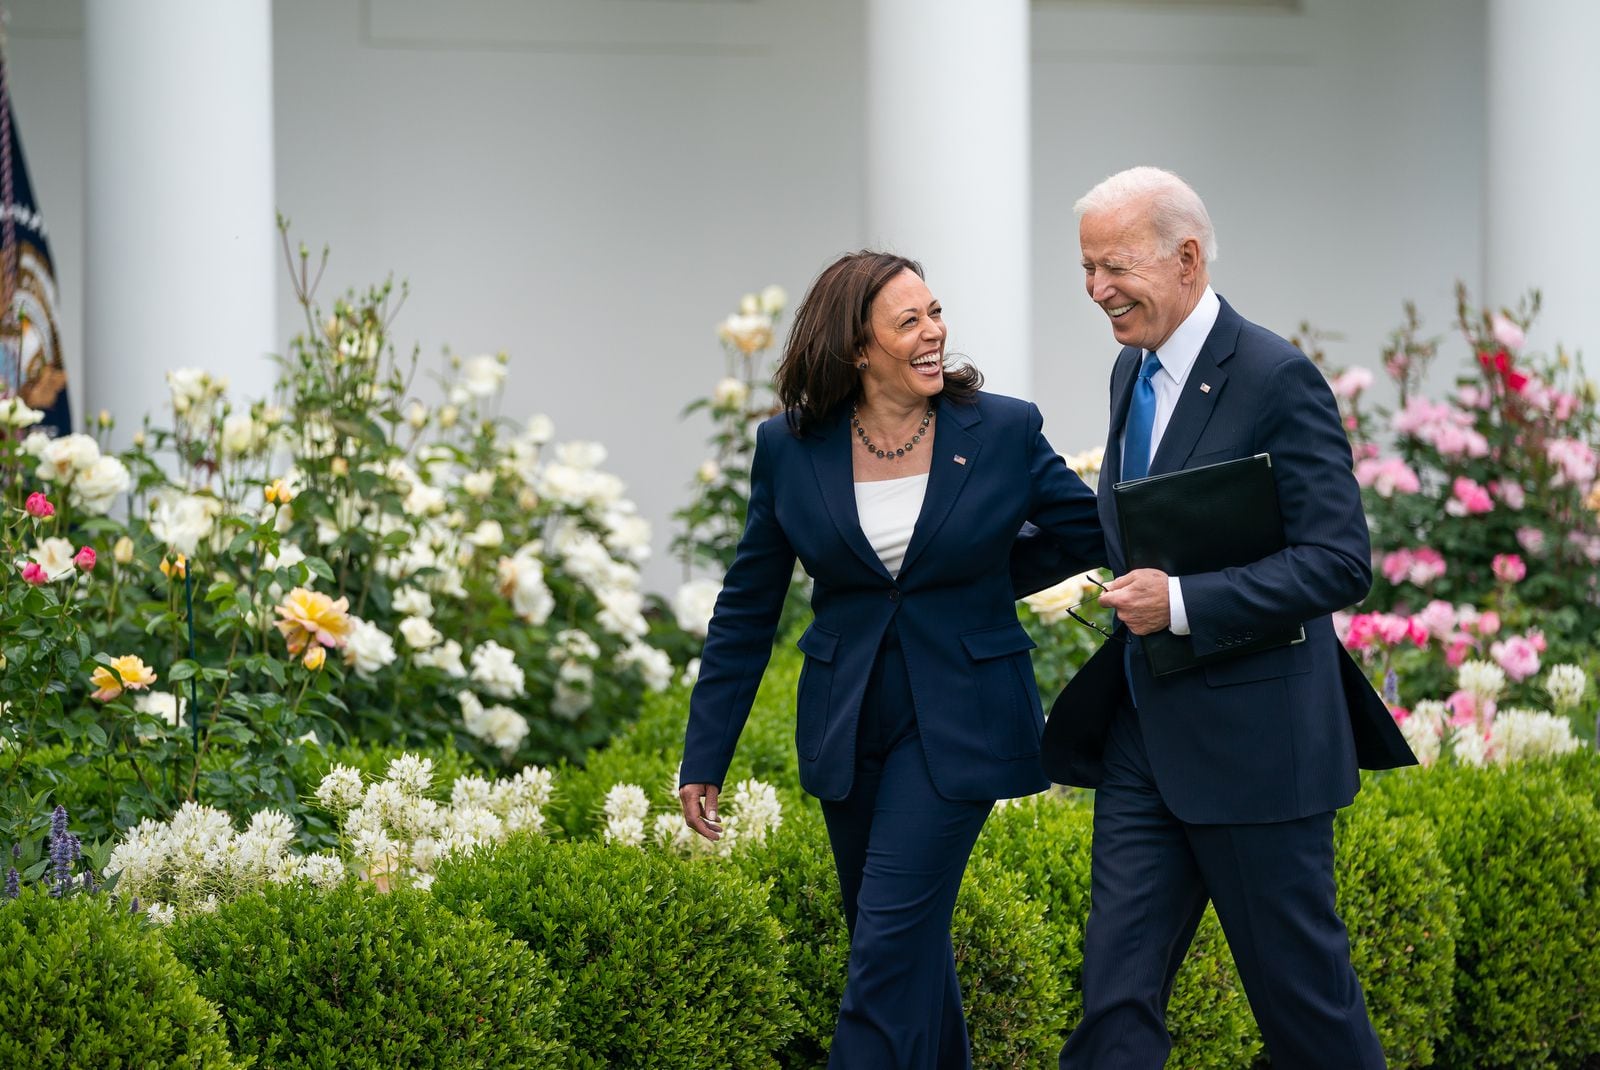 Joe Biden expresó su apoyo a Kamala Harris. (Foto: X @JoeBiden)